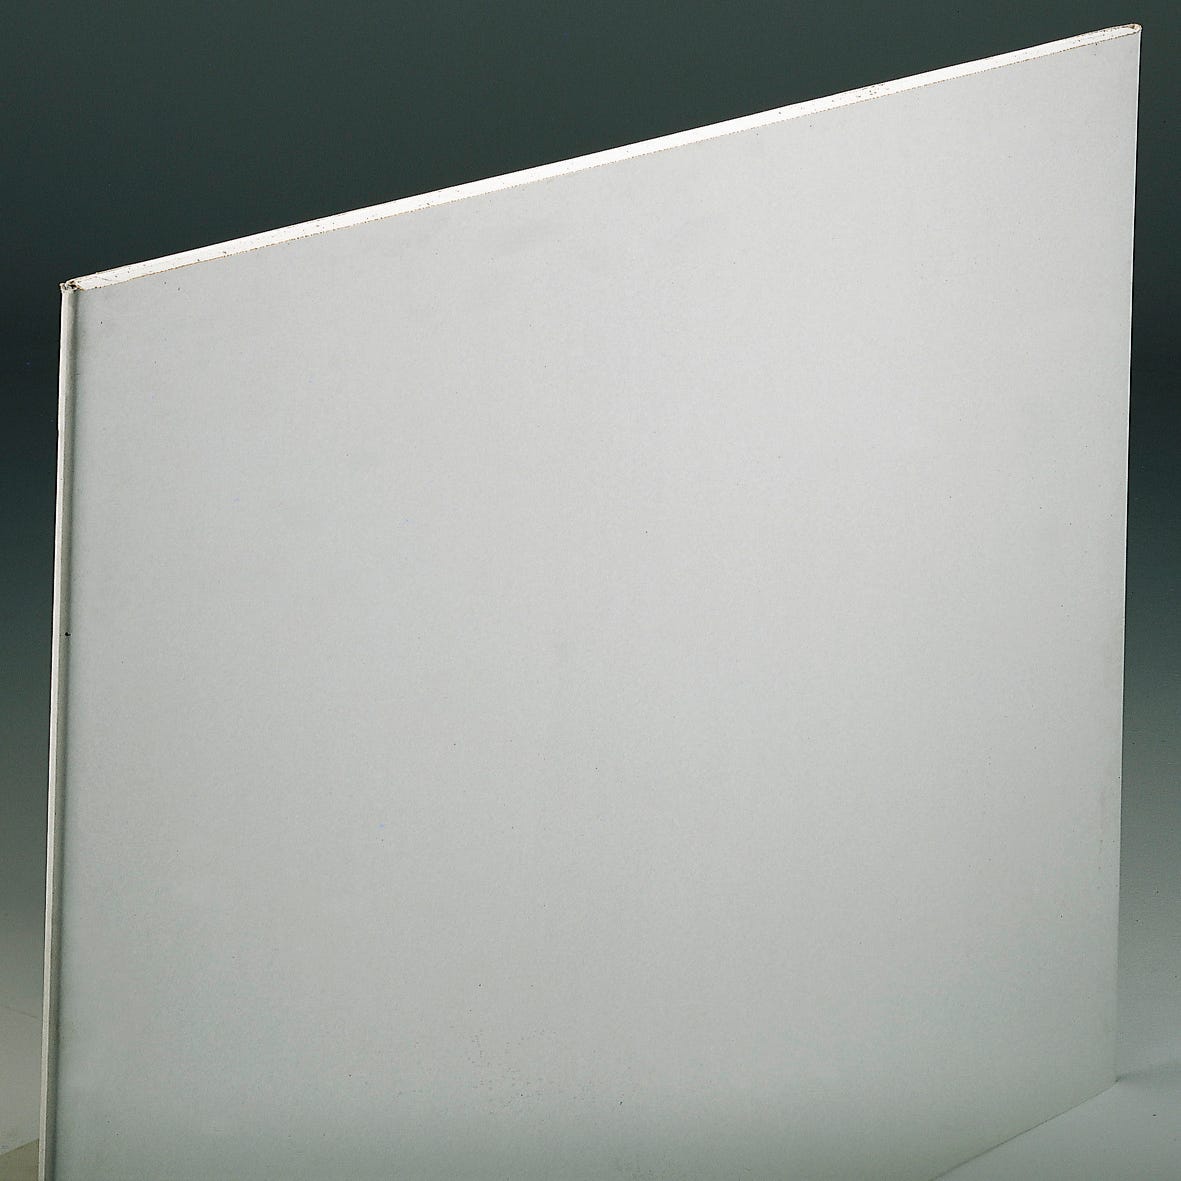 Plaque de plâtre acoustique BA13 Planodis 250 x 120 cm, ép.12,5 mm (vendue  à la plaque)